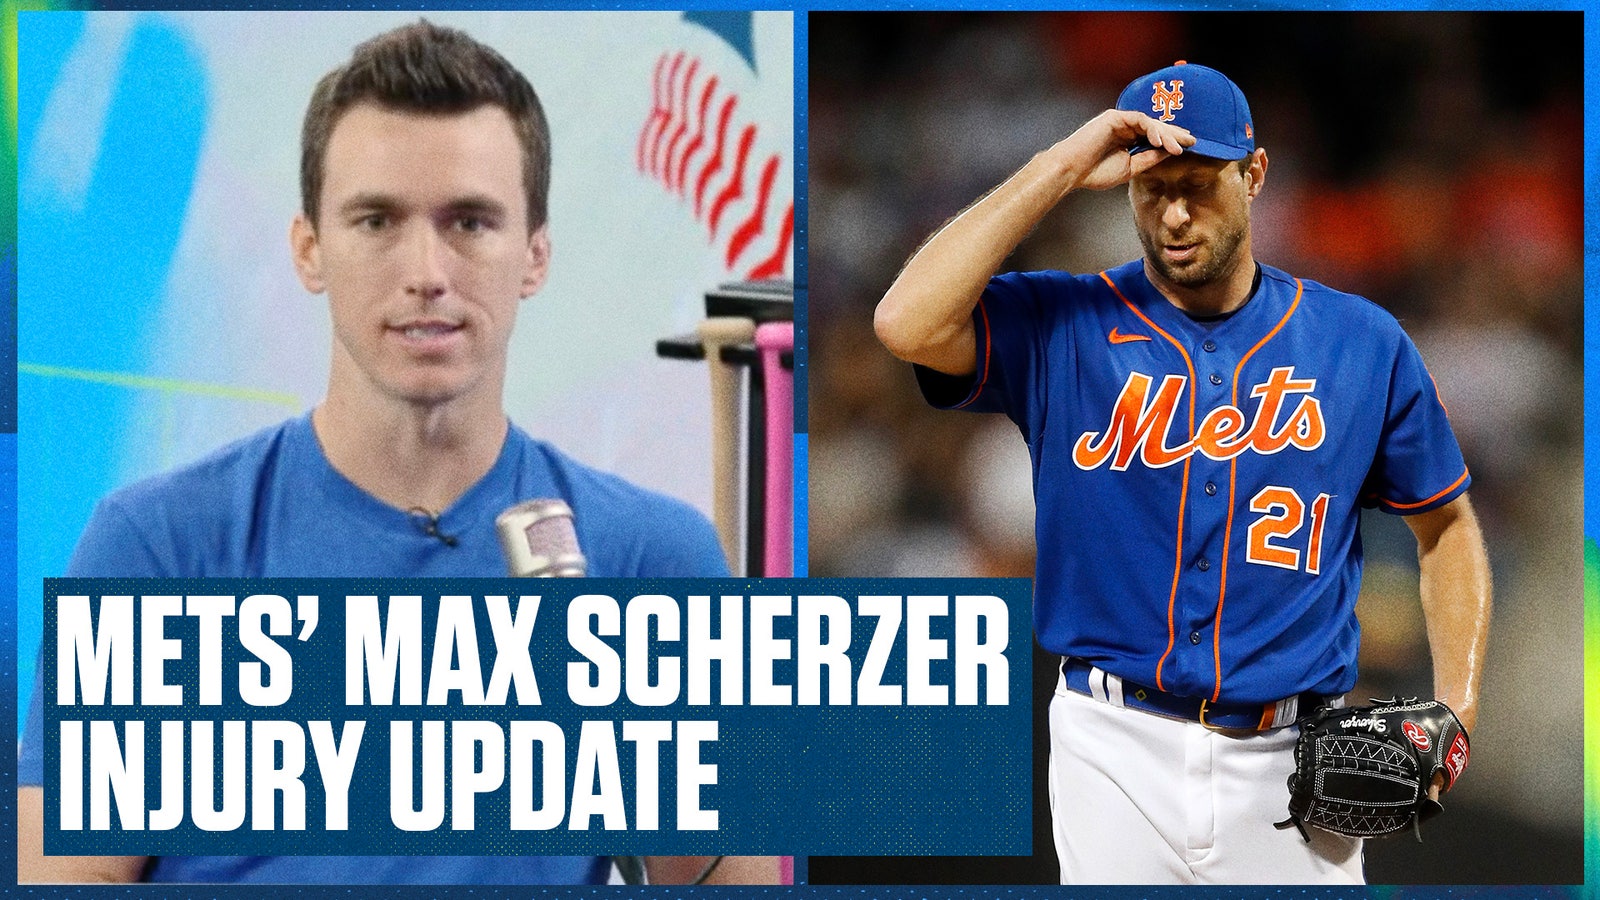 Mets star Max Scherzer is headed to the injured list